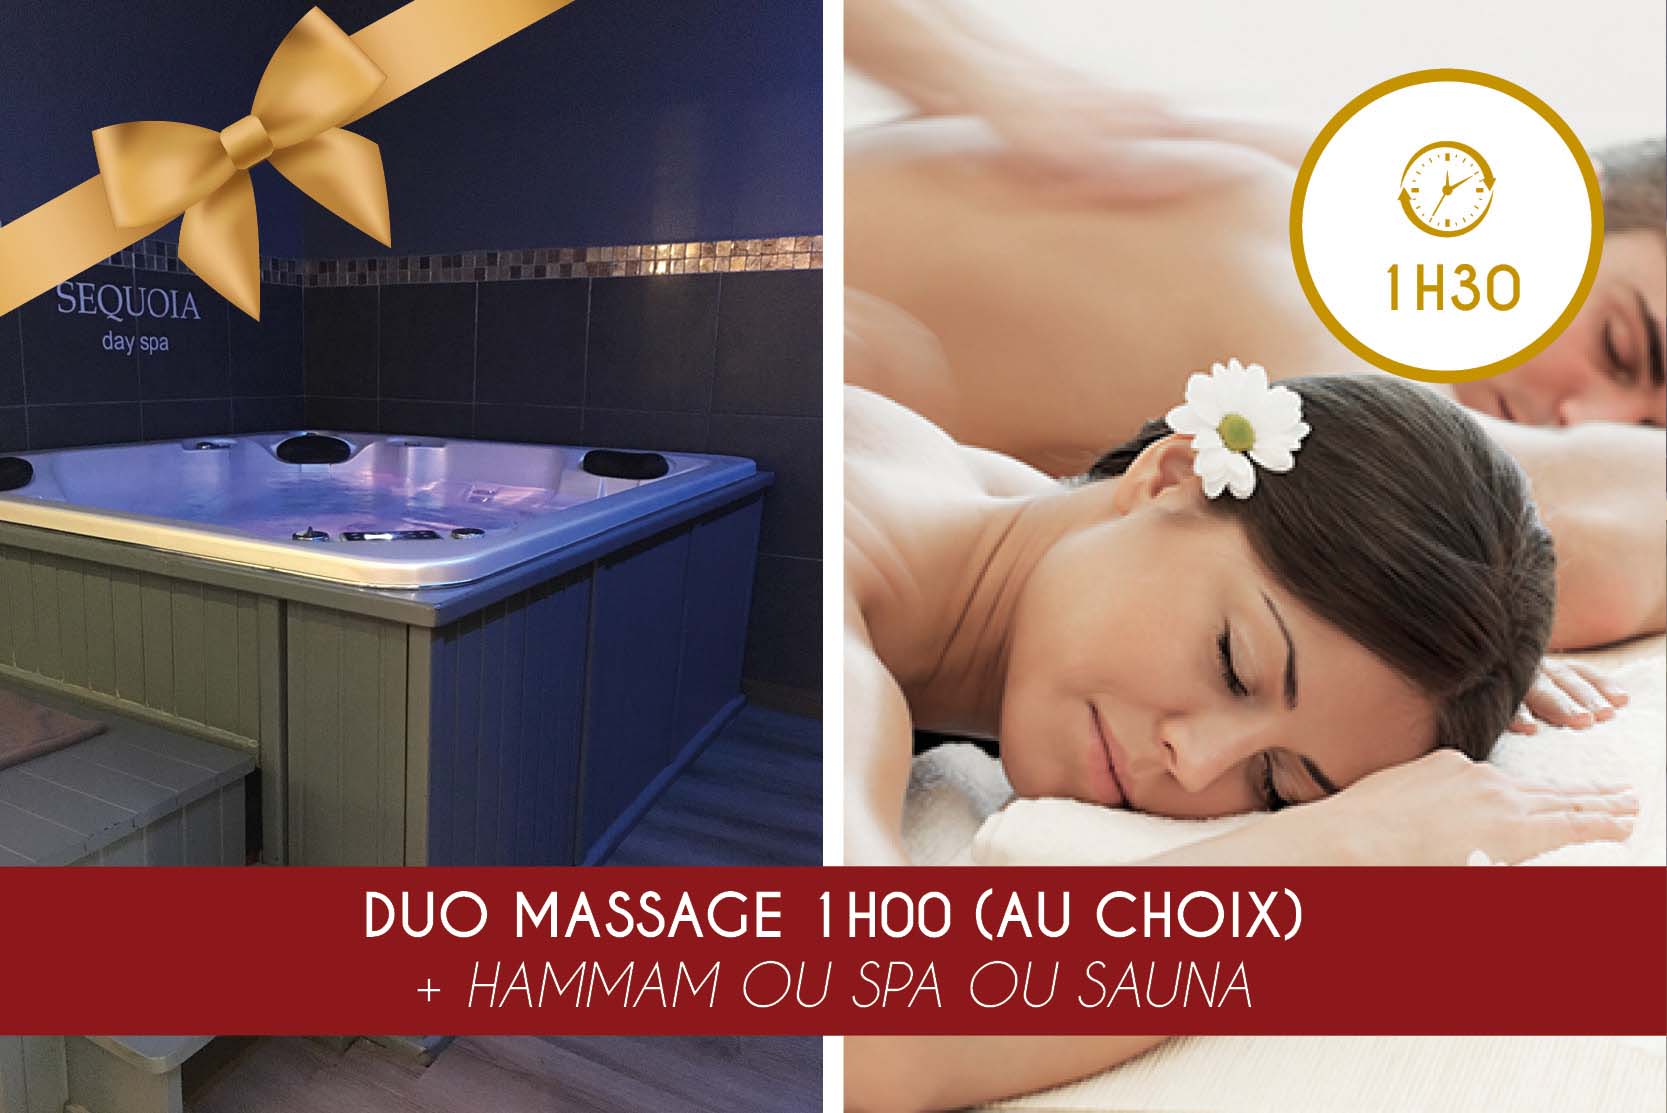 Duo Massage 1h00 (au choix) + Hammam OU Spa OU Sauna